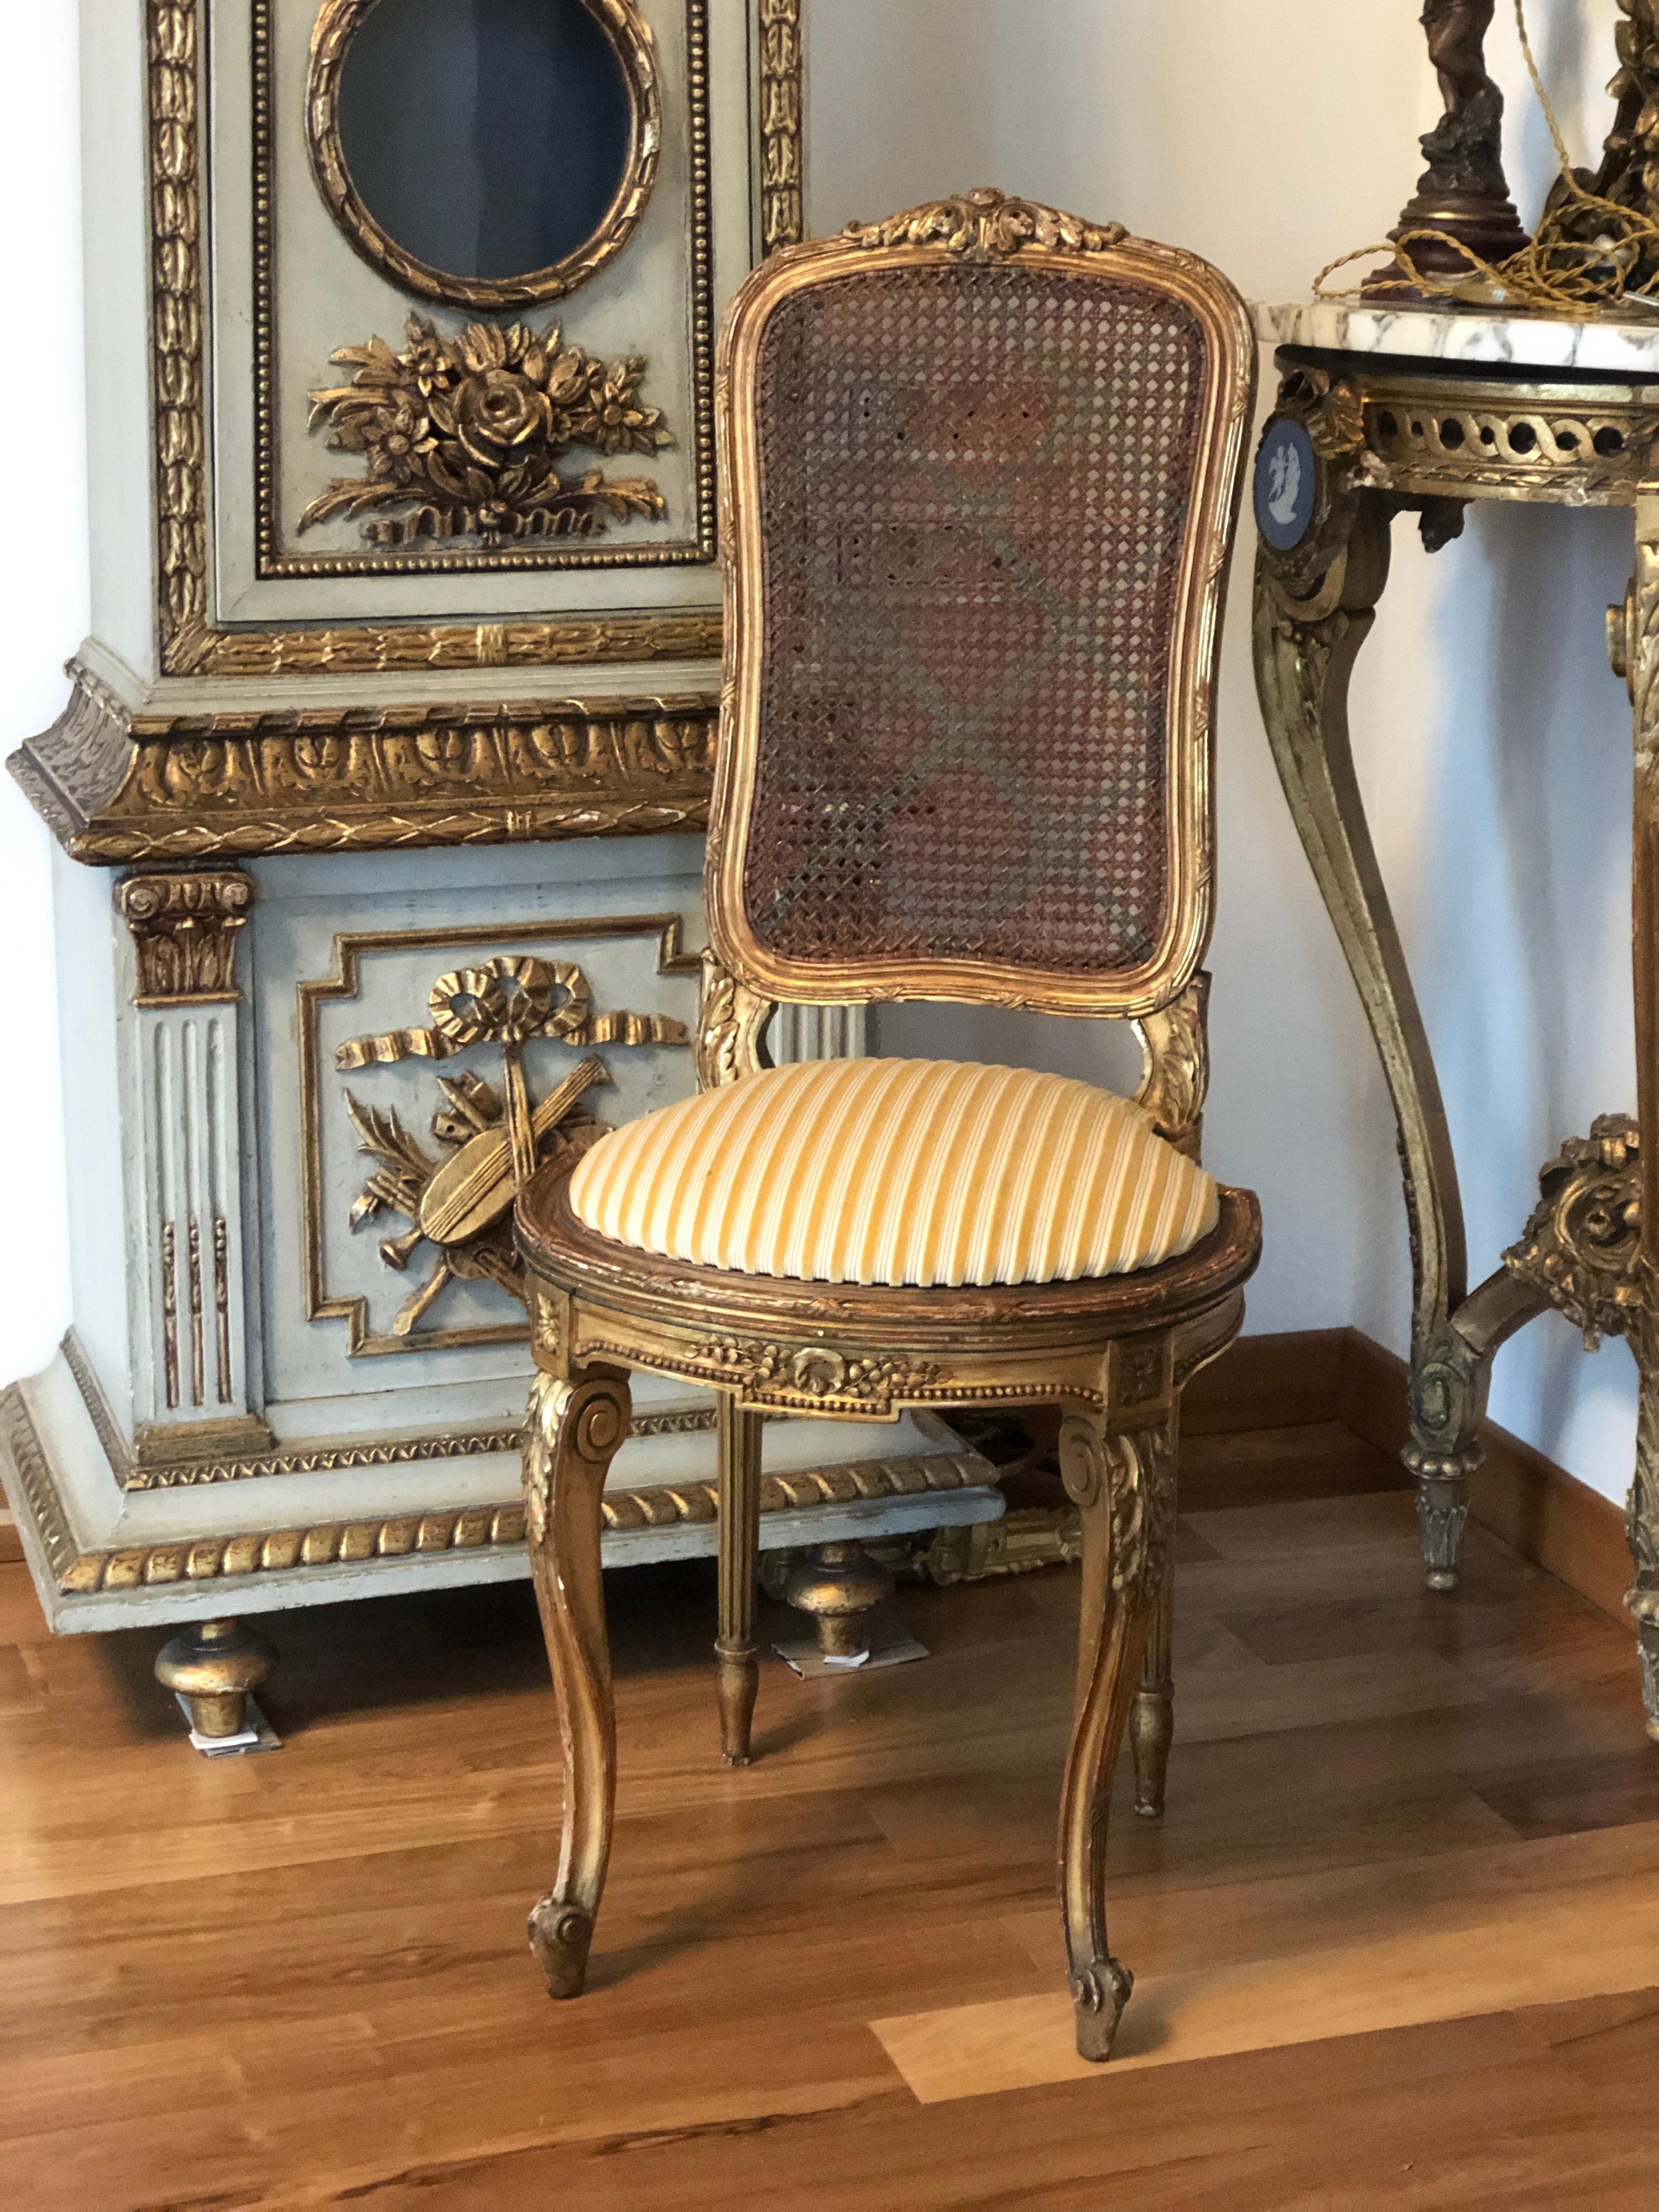 Petite chaise de salon française, de style Louis XVI, avec un cadre en bois doré et des ornements floraux sculptés. Les pieds avant sont incurvés et l'assise est semi-ronde à l'avant, avec un coussin à rayures en velours moutarde. Le dossier et